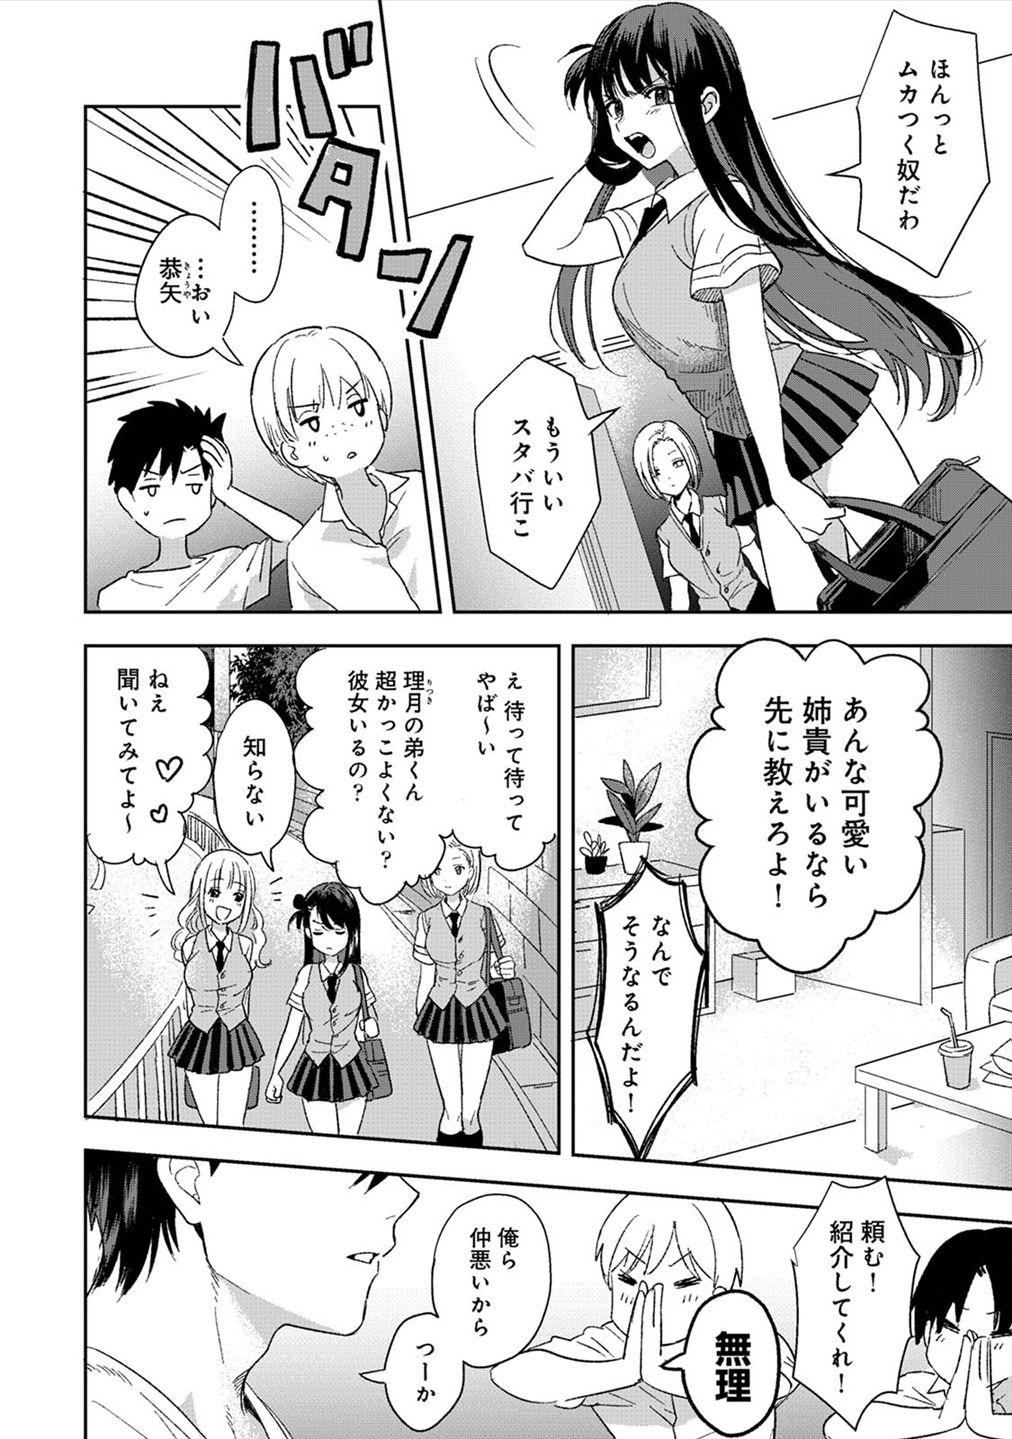 Blackmail [Akao] Konomi janaikedo ~ mukatsuku ane to aishō batsugun ecchi ~ 1 Clothed Sex - Page 3